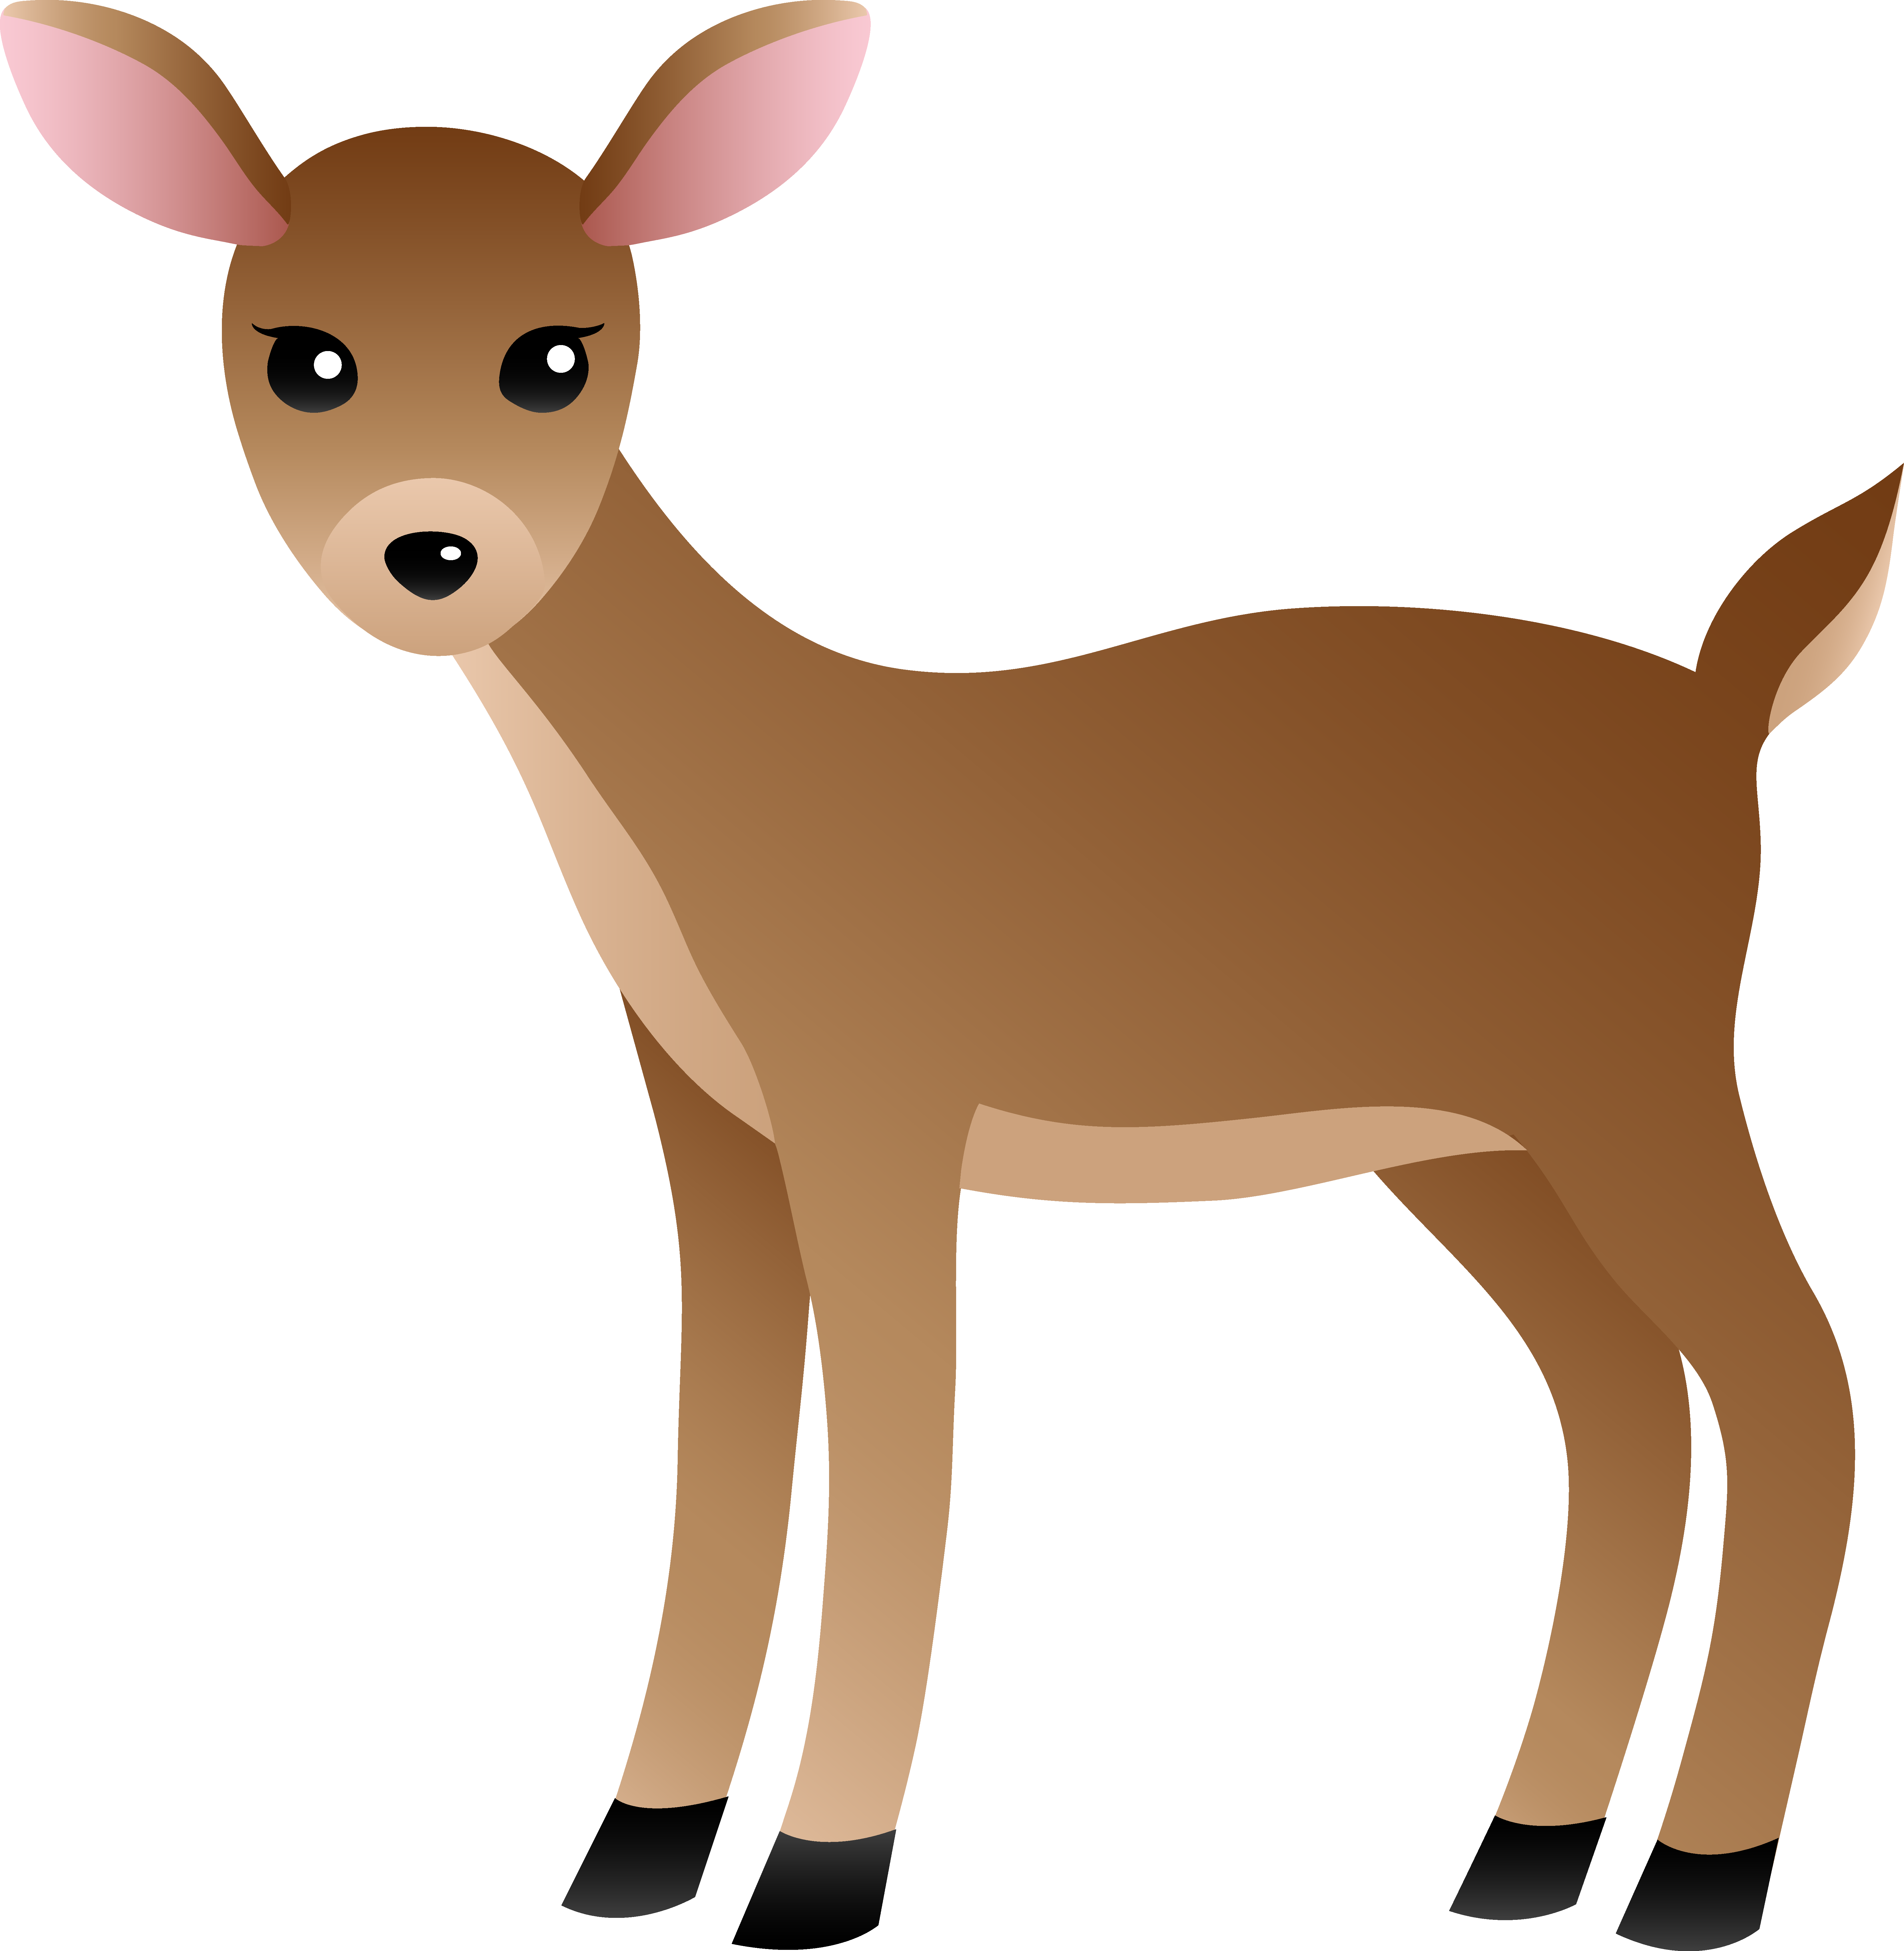 Deer clip art vector free cli